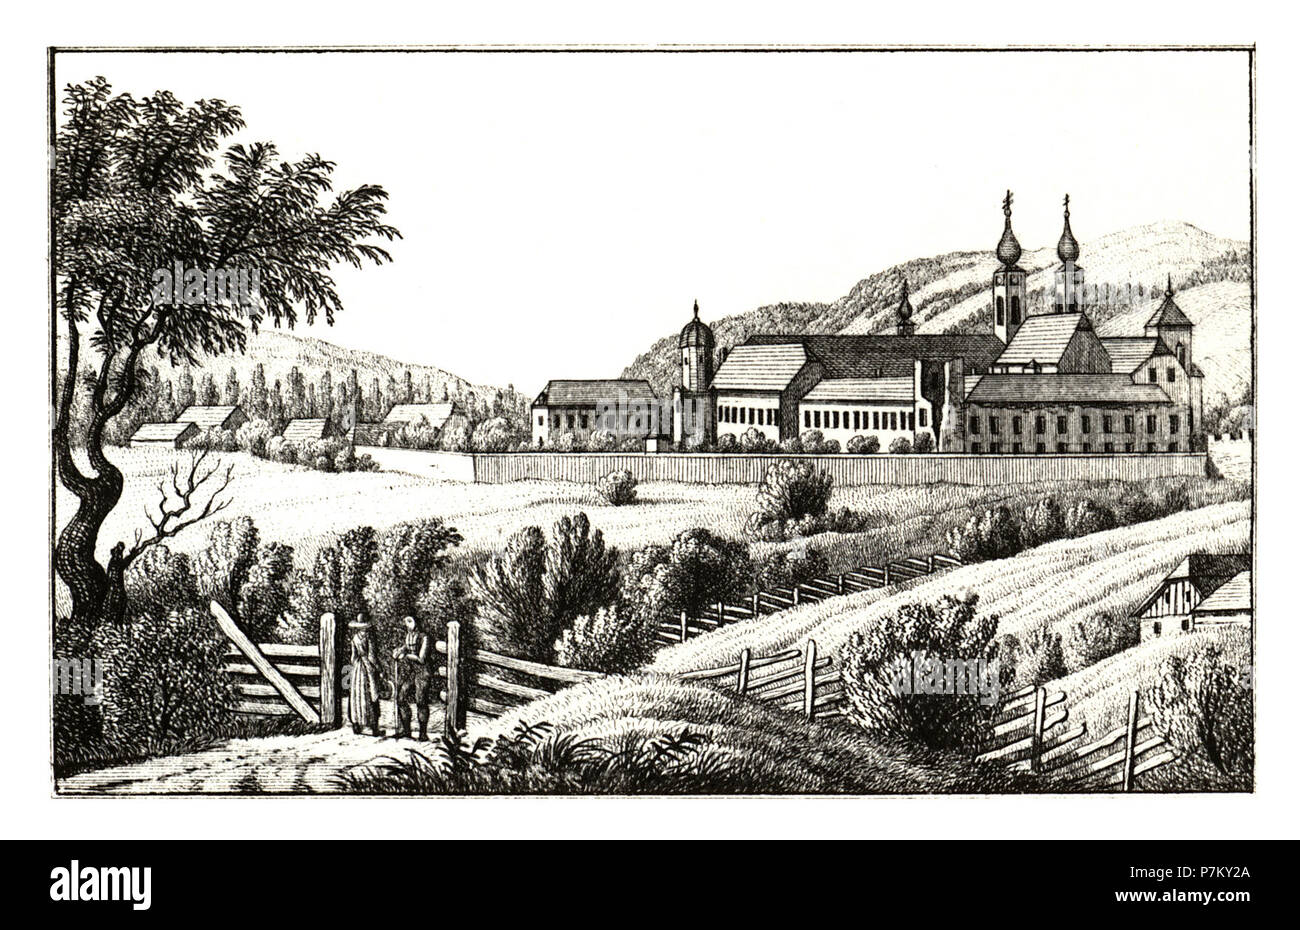 277 Stift Seckau, Vordernberg - gez. S. Kölbl - J.F.Kaiser Lithografirte Ansichten der Steiermark 1830. Stock Photo